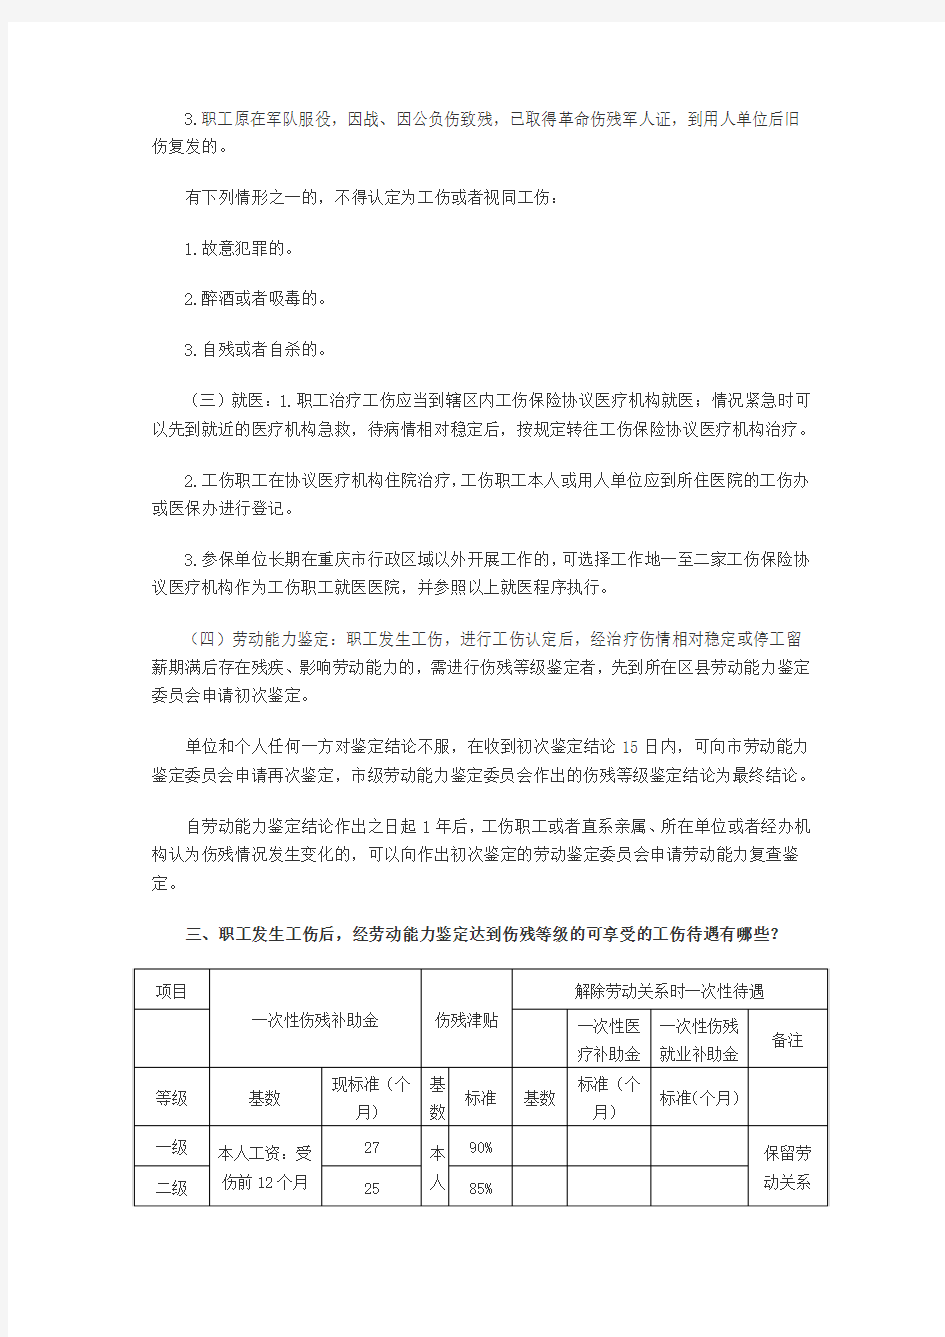 重庆市工伤保险政策解读